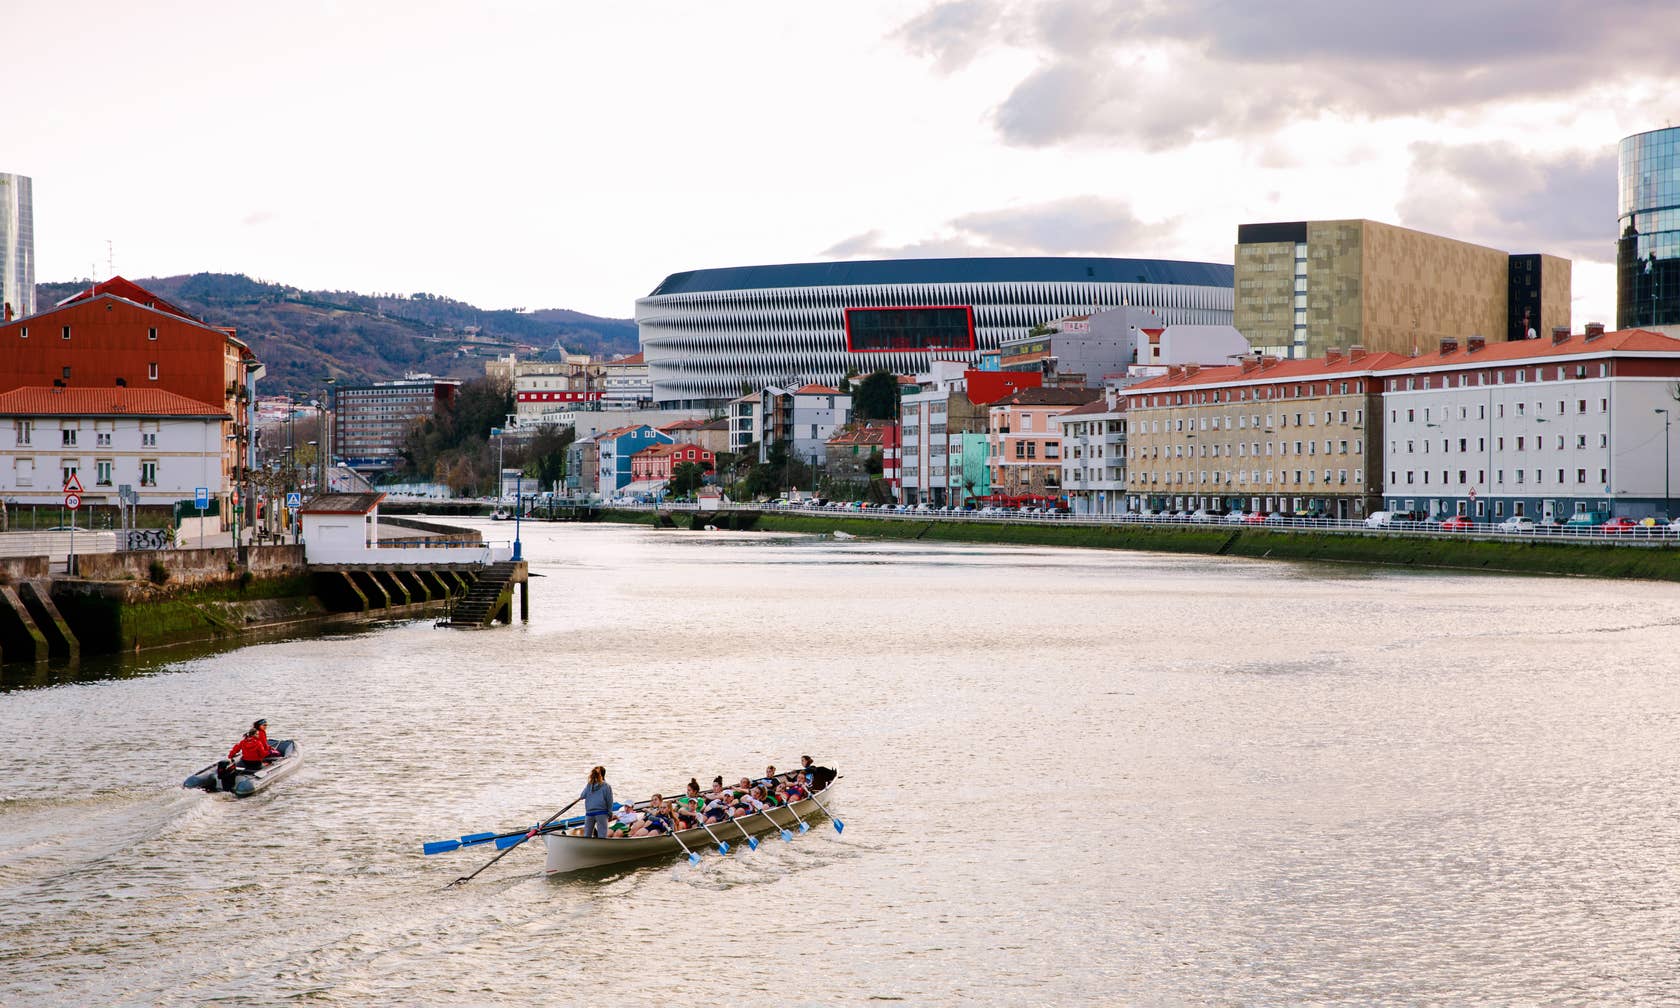 Bérbeadó nyaralók itt: Bilbao